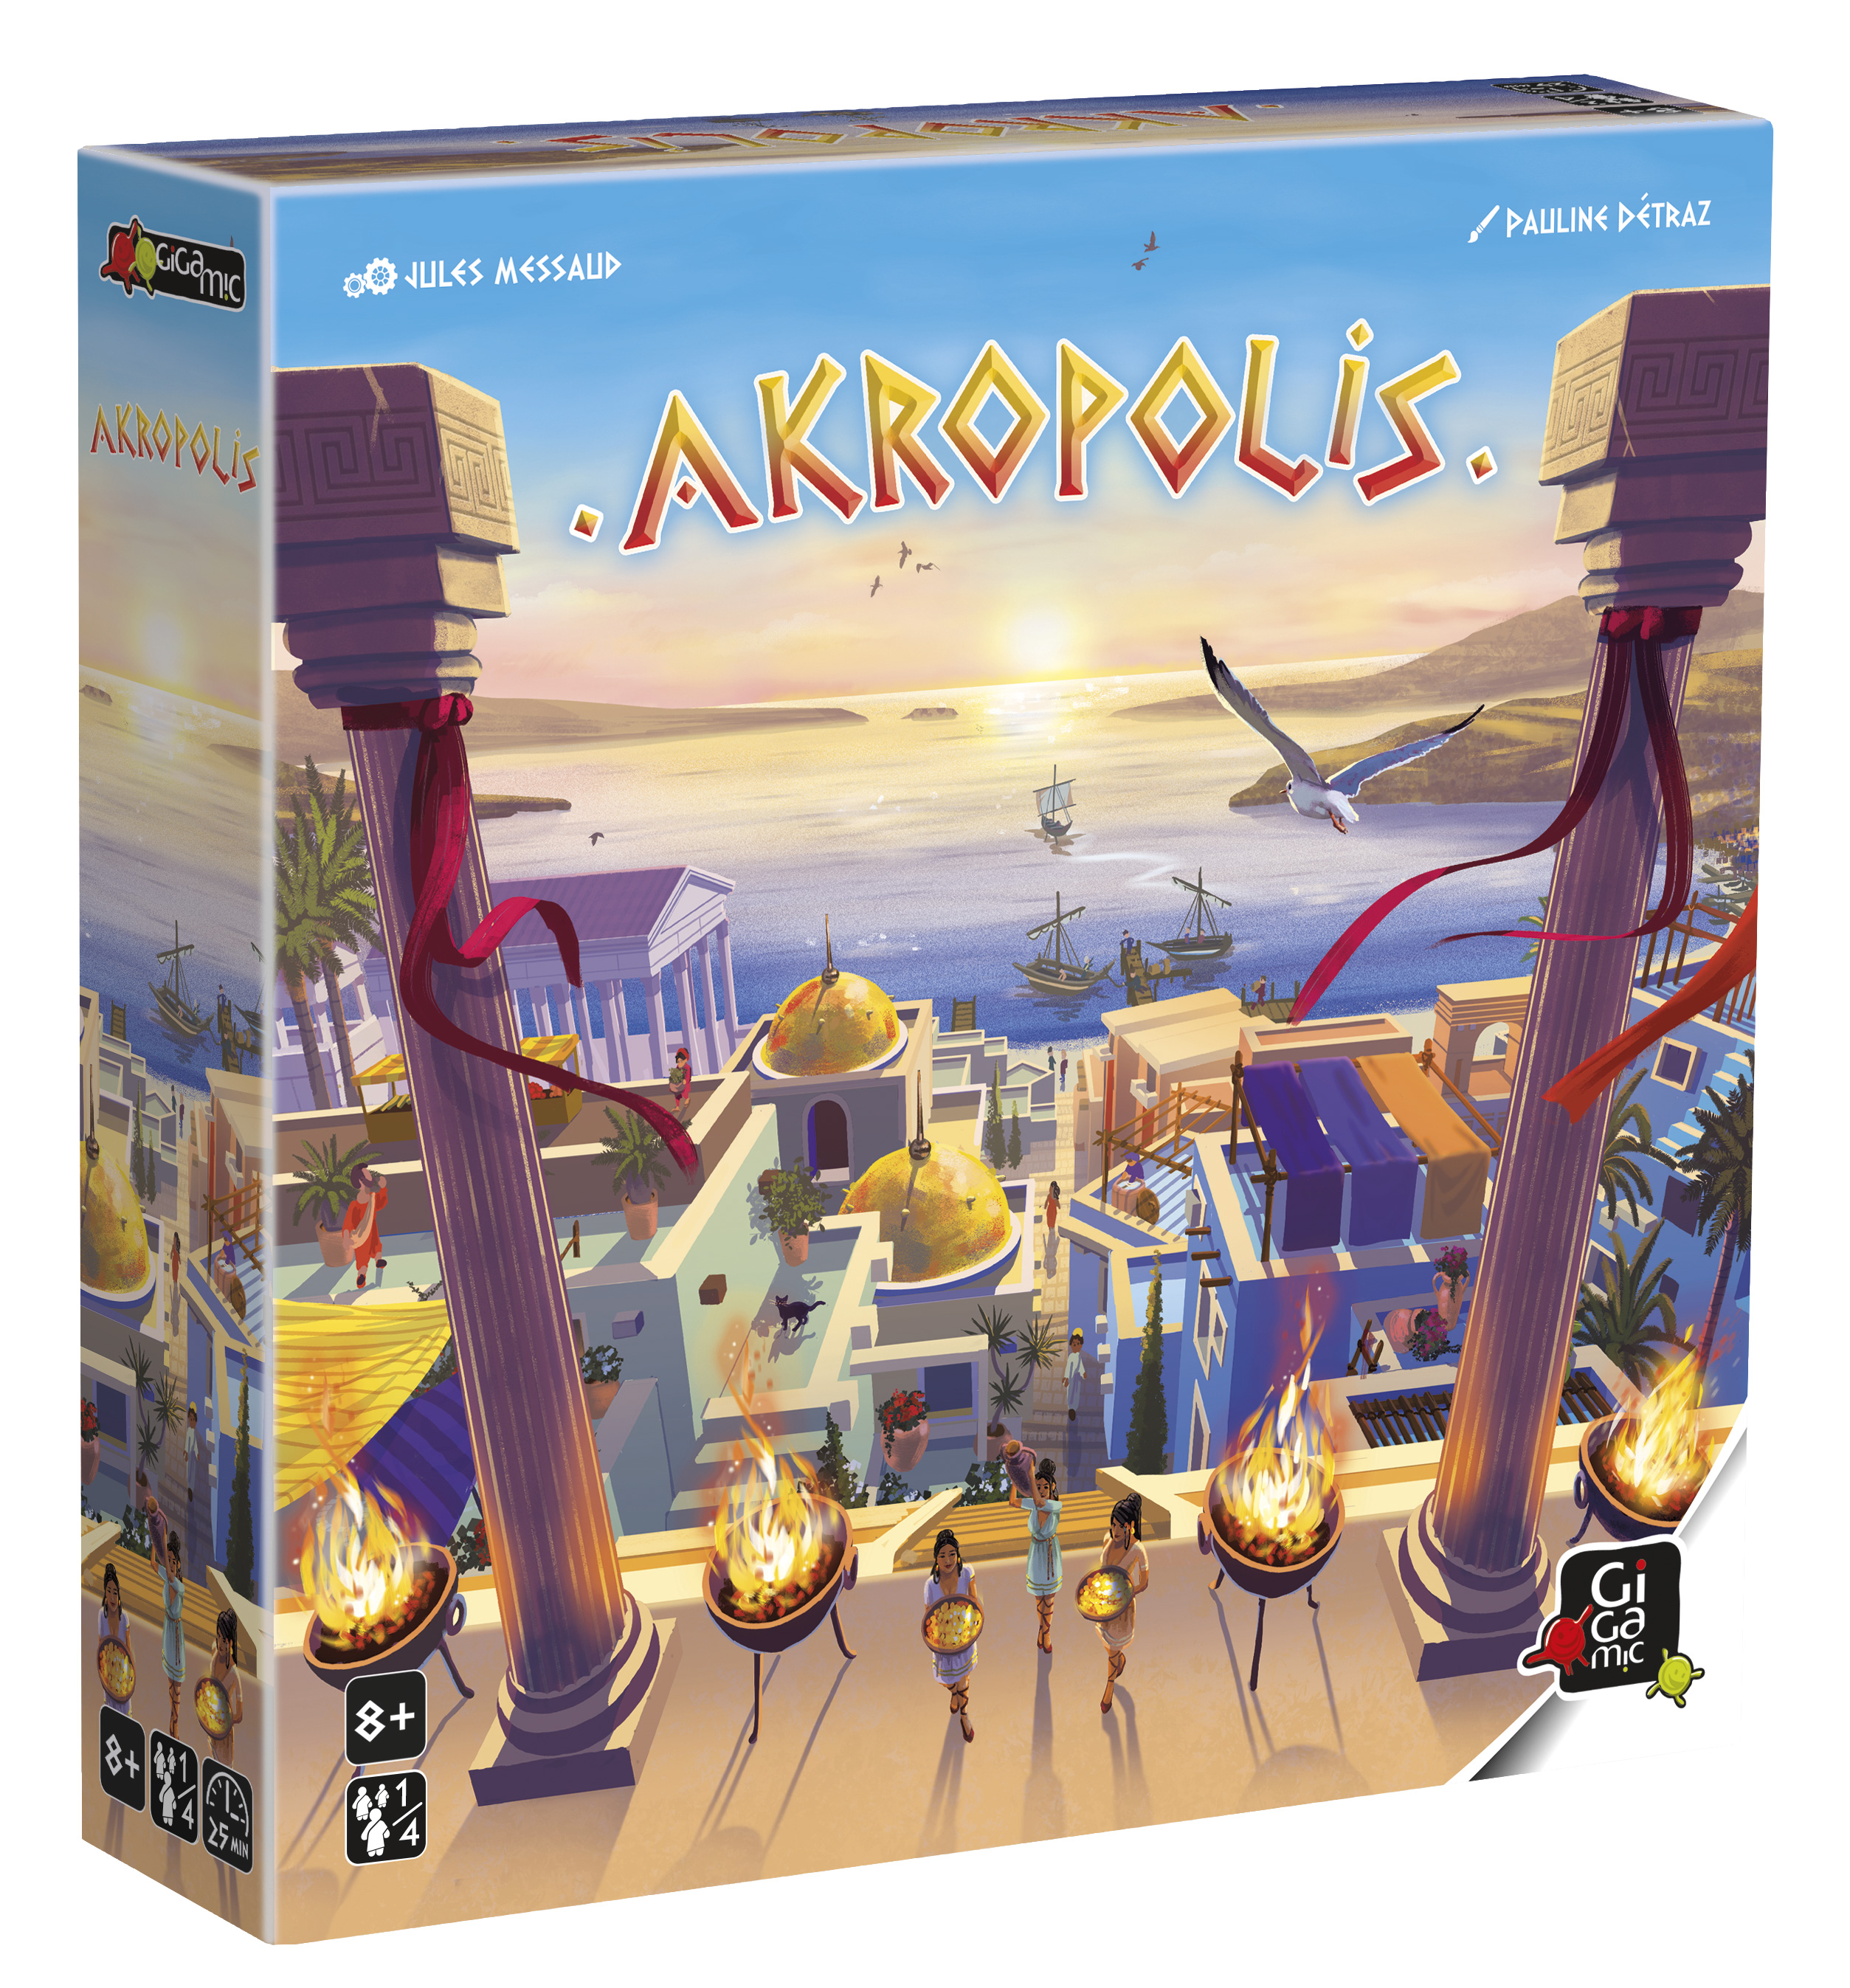 Akropolis : meilleur jeu de société Gigamic